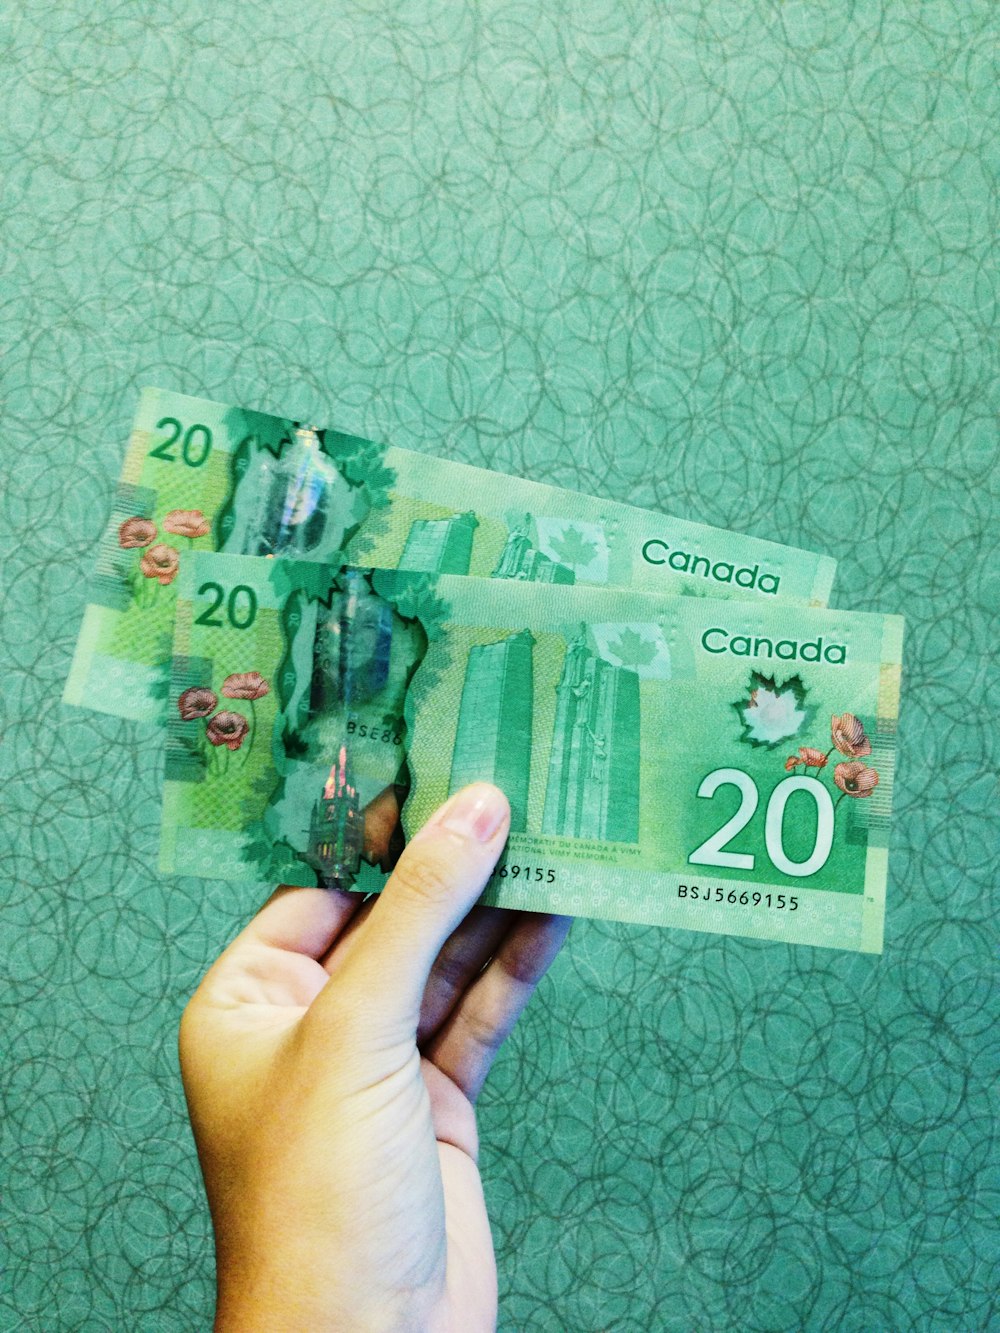 20 캐나다 달러 지폐 2장을 들고 있는 사람